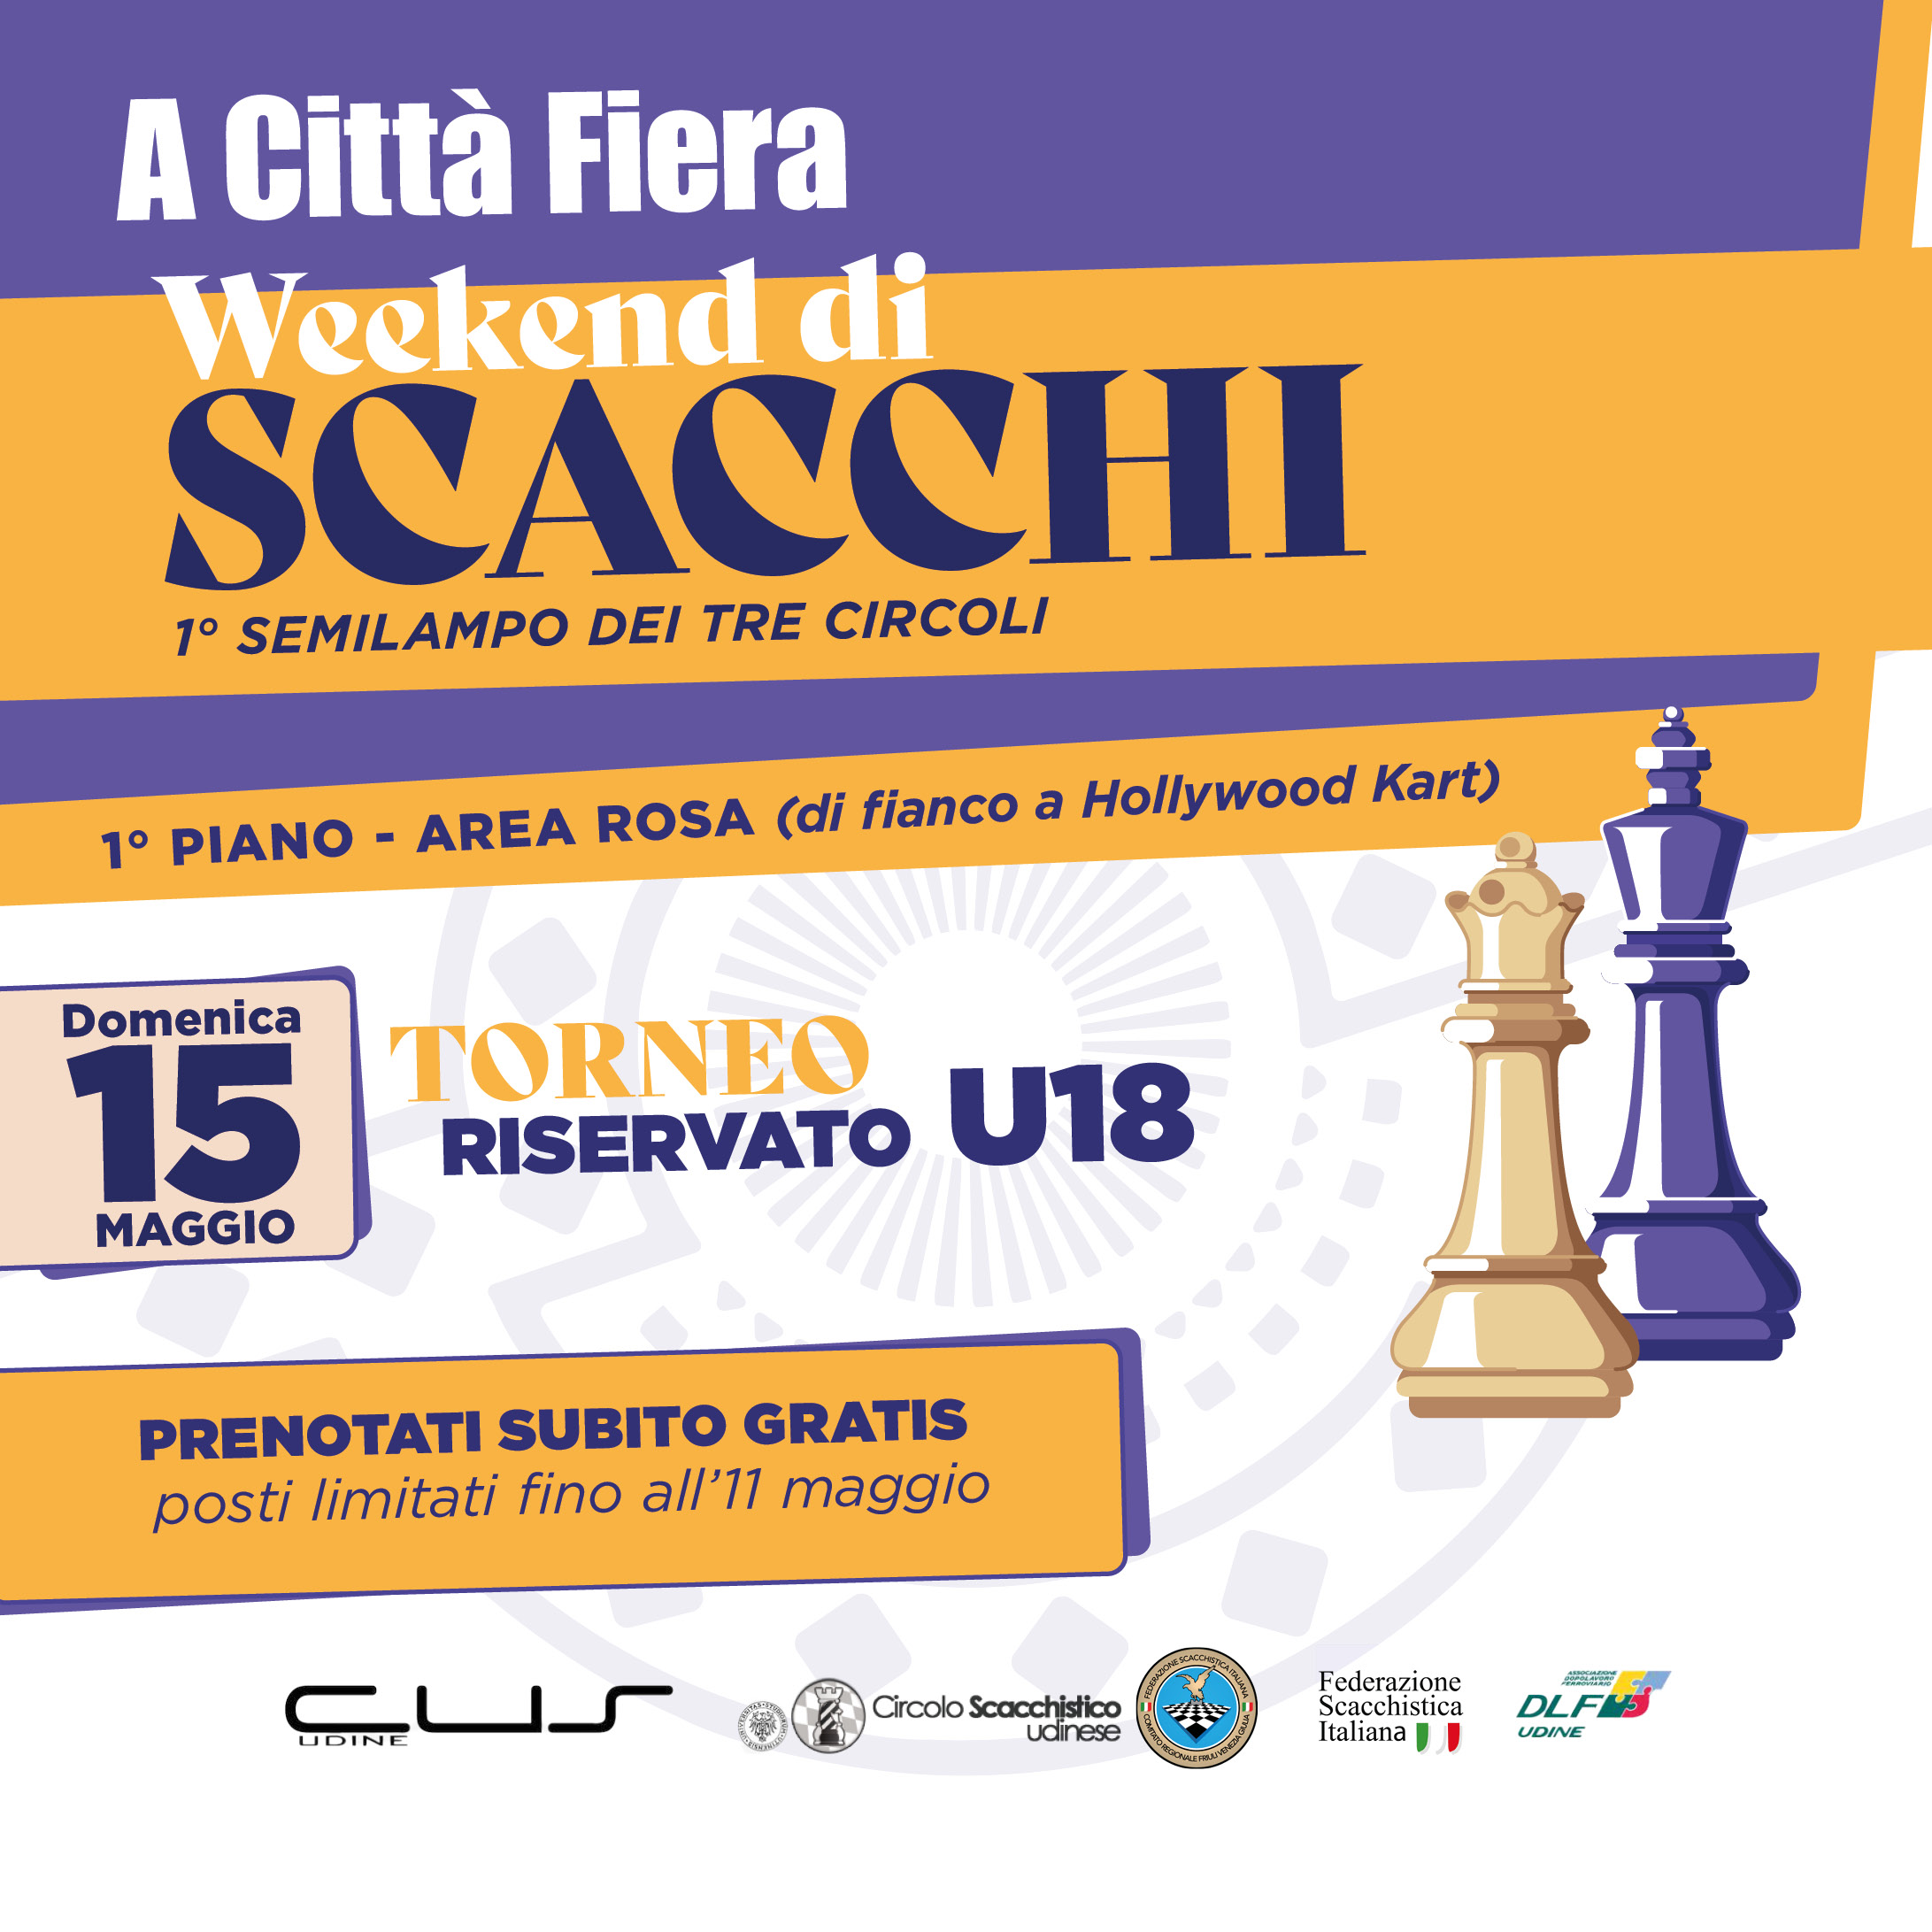 Domenica 15 Maggio: torneo di scacchi riservato U18